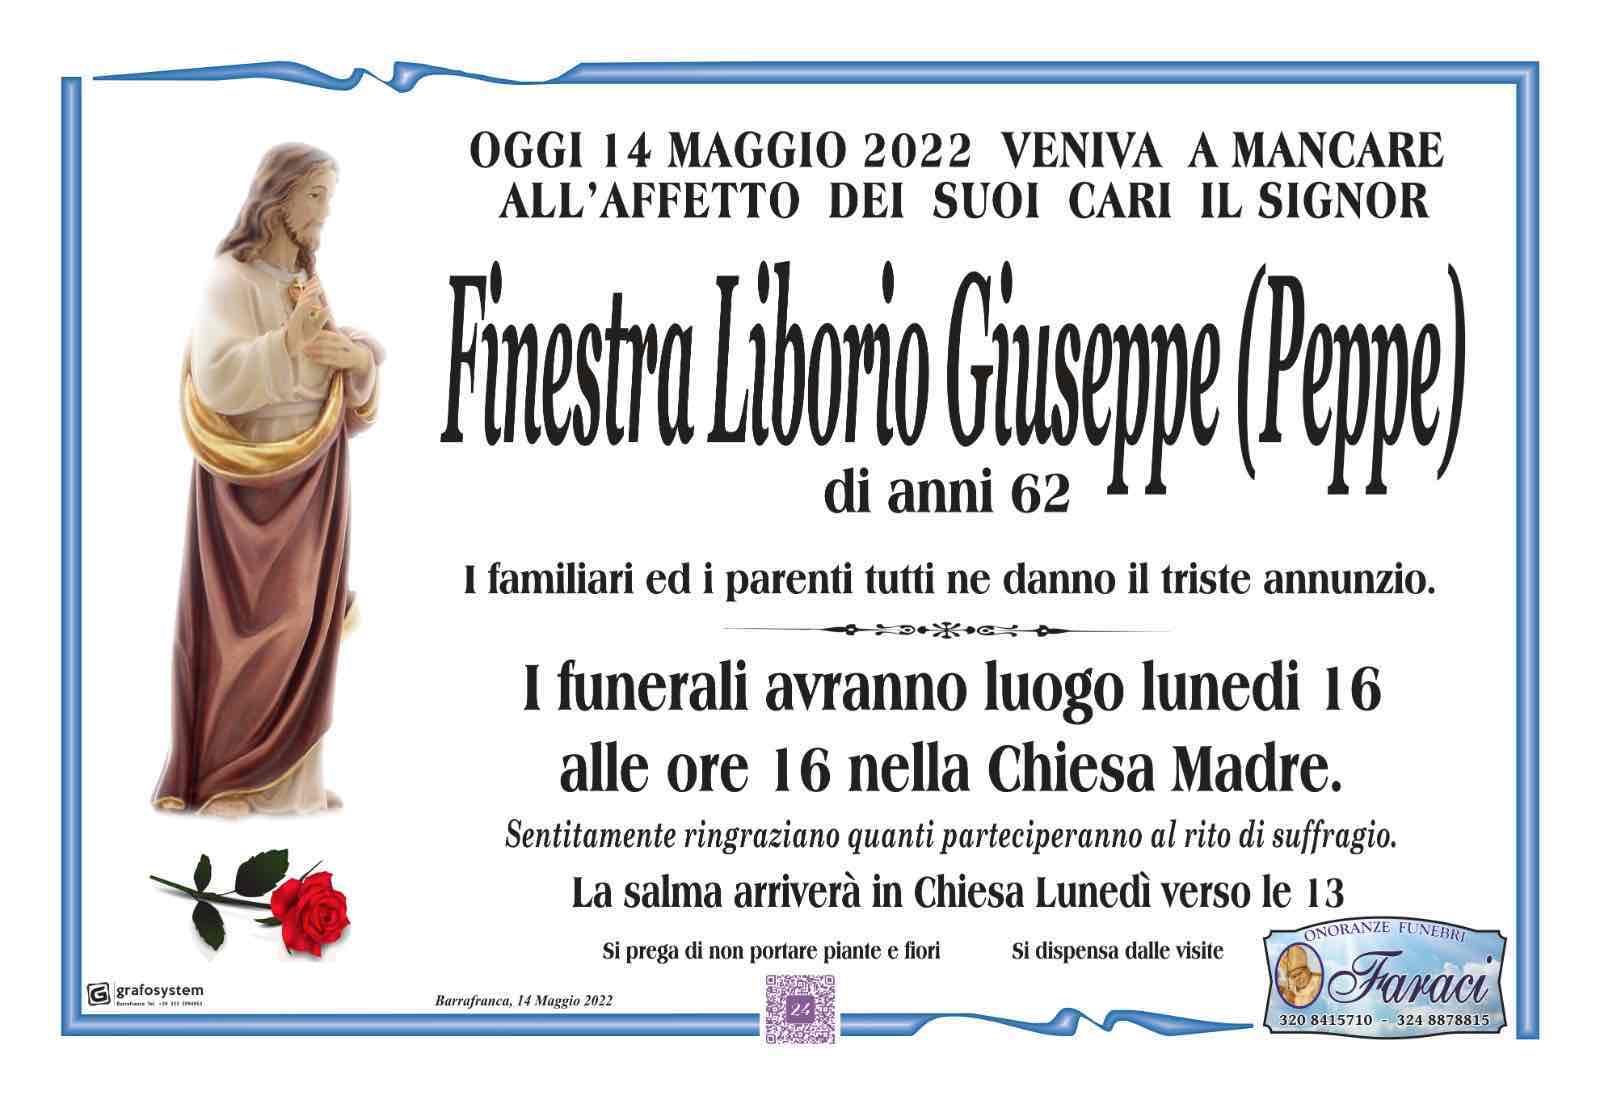 Liborio Giuseppe Finestra